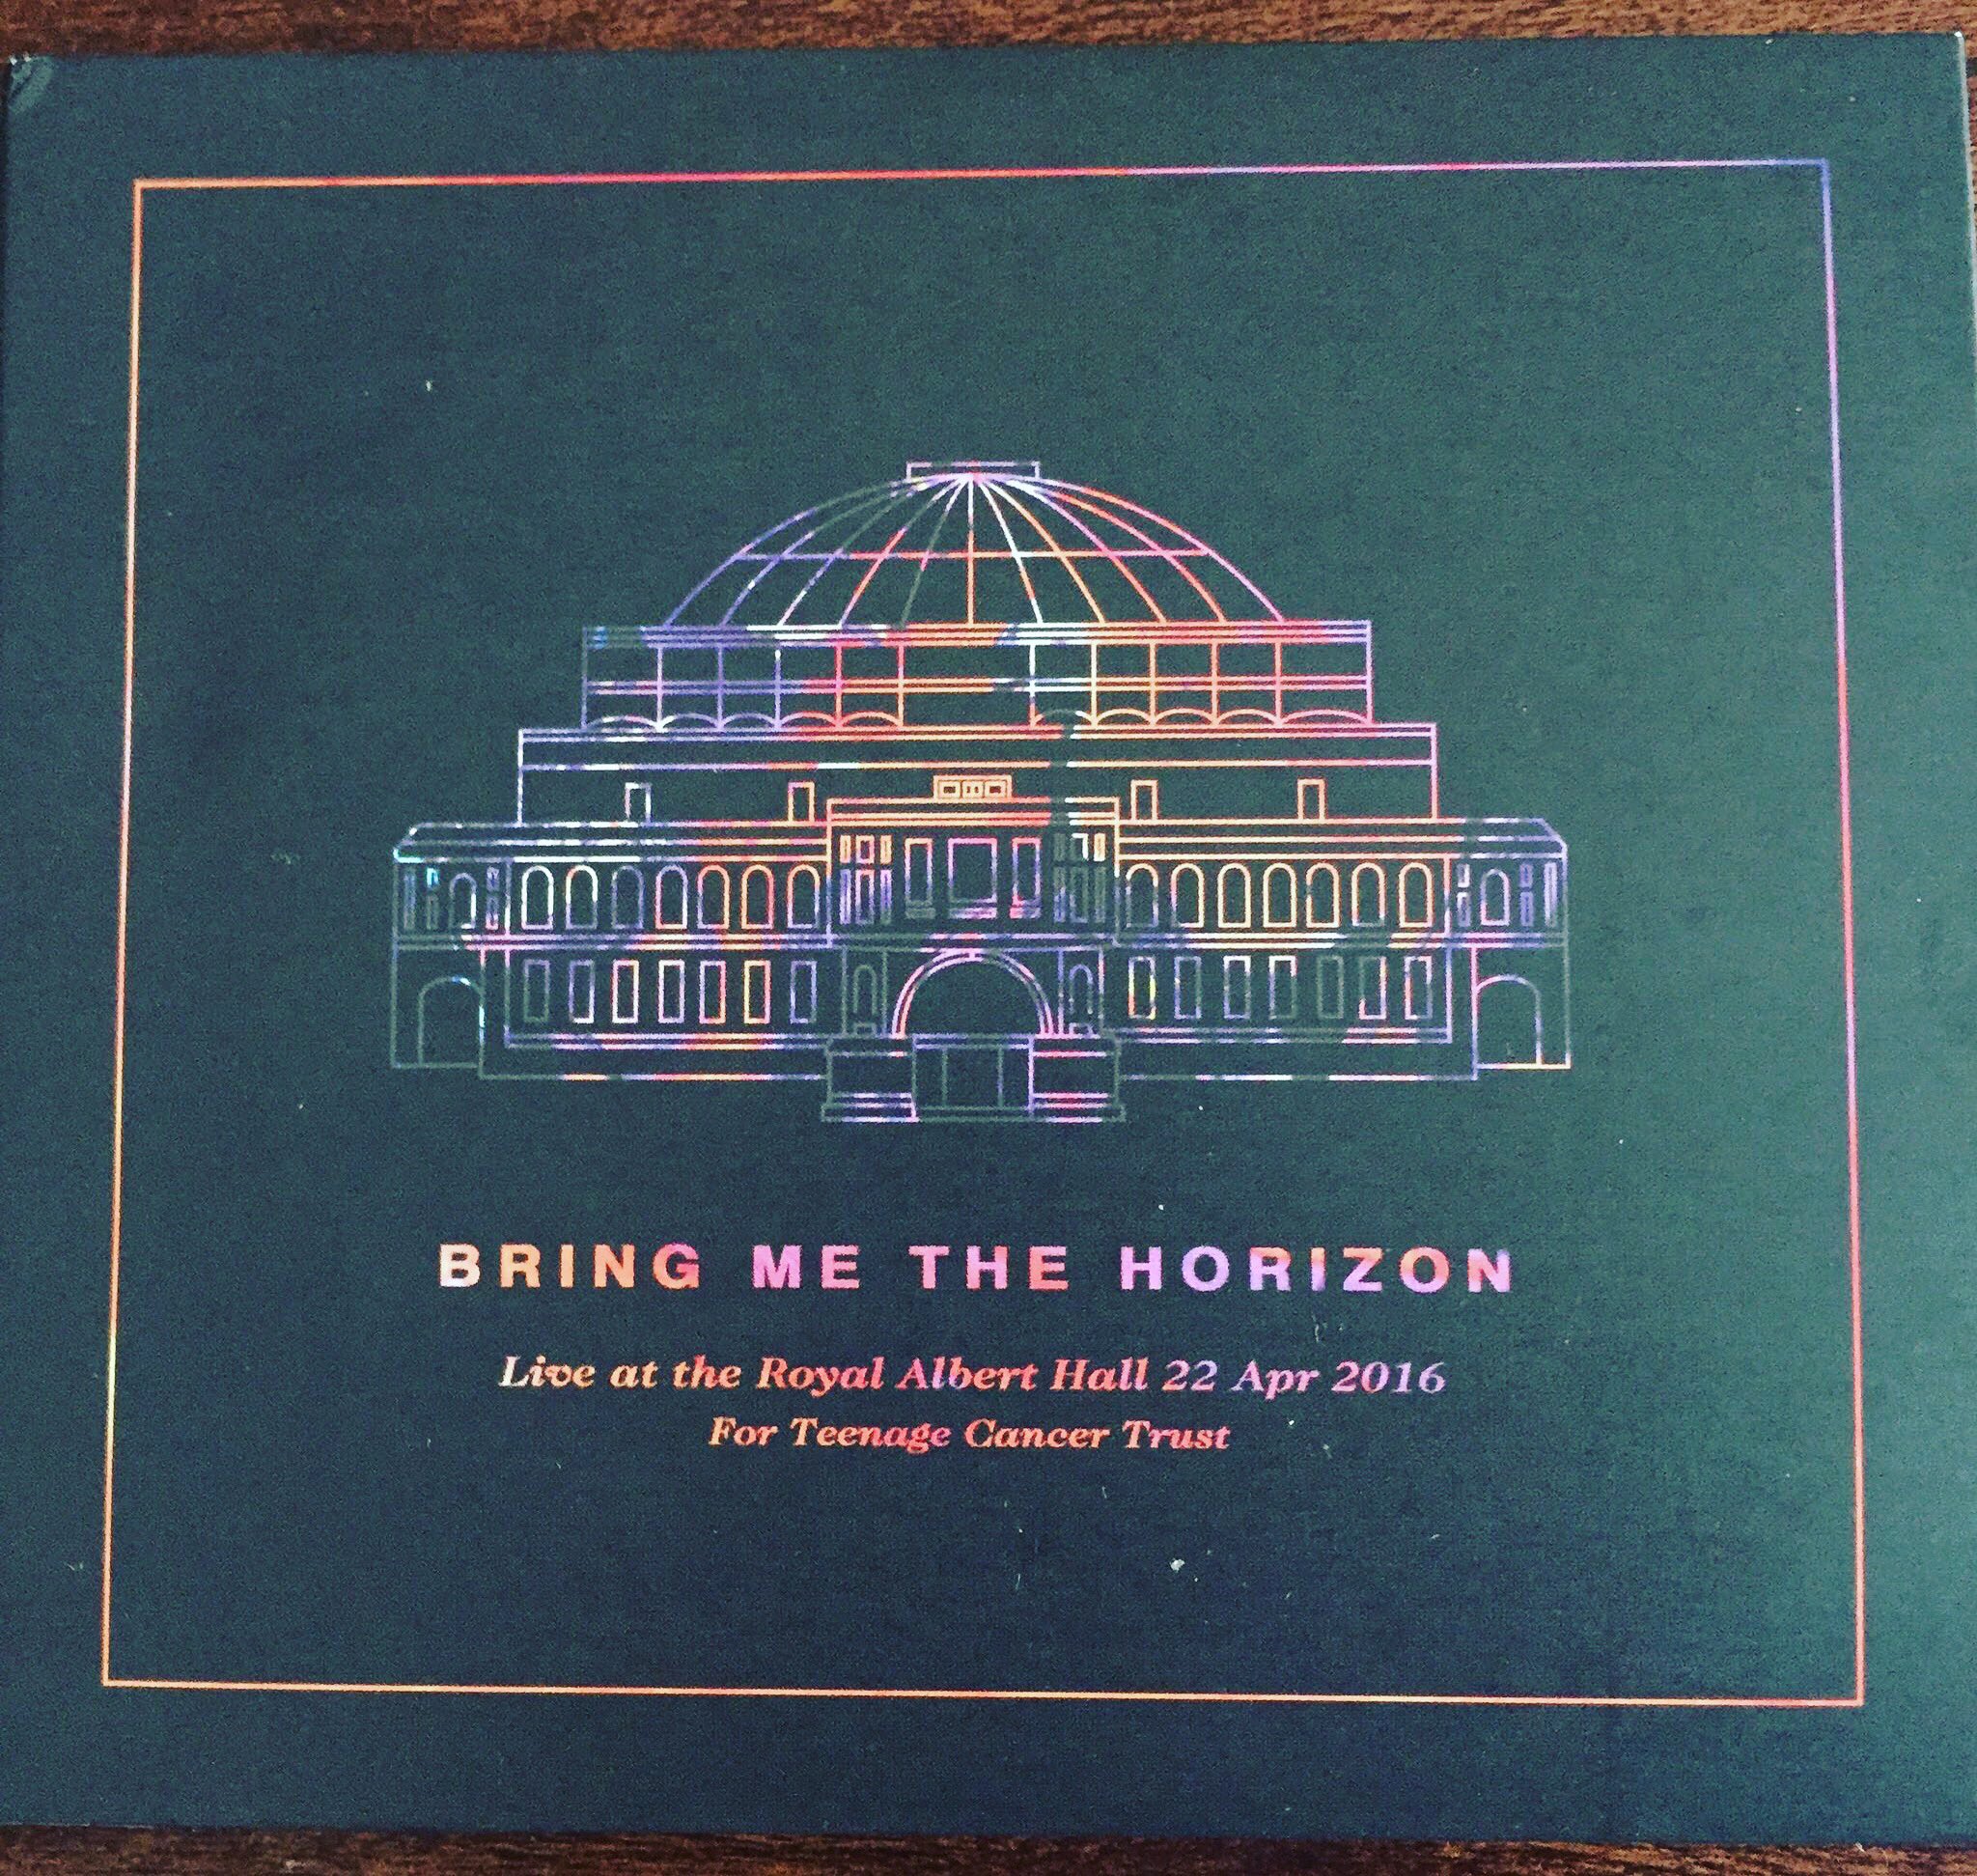 BRING ME THE HORIZON - LIVE AT THE ROYAL ALBERT HALL CD